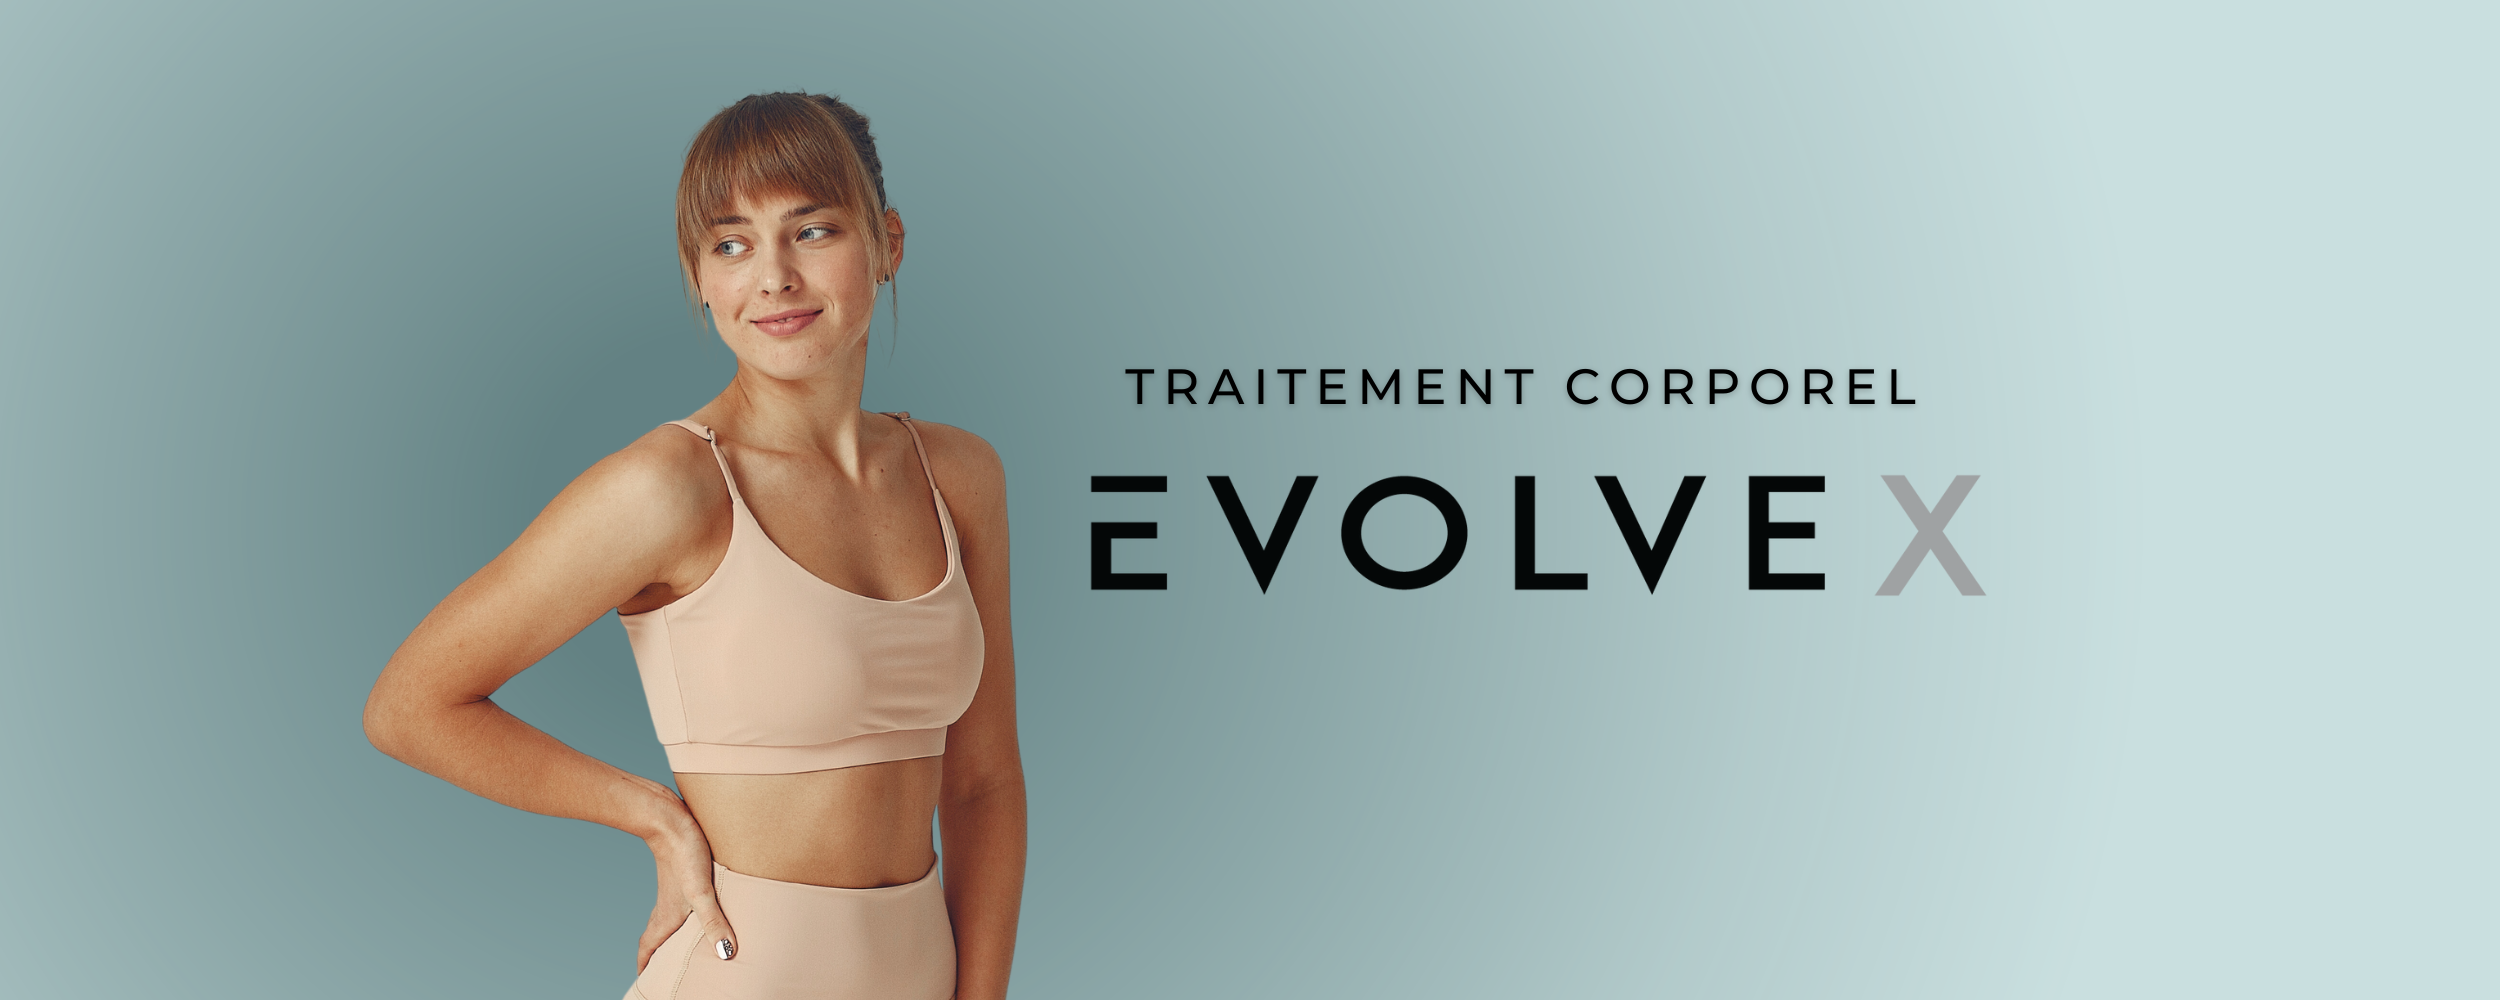 Tout savoir sur le traitement corporel Evolve X